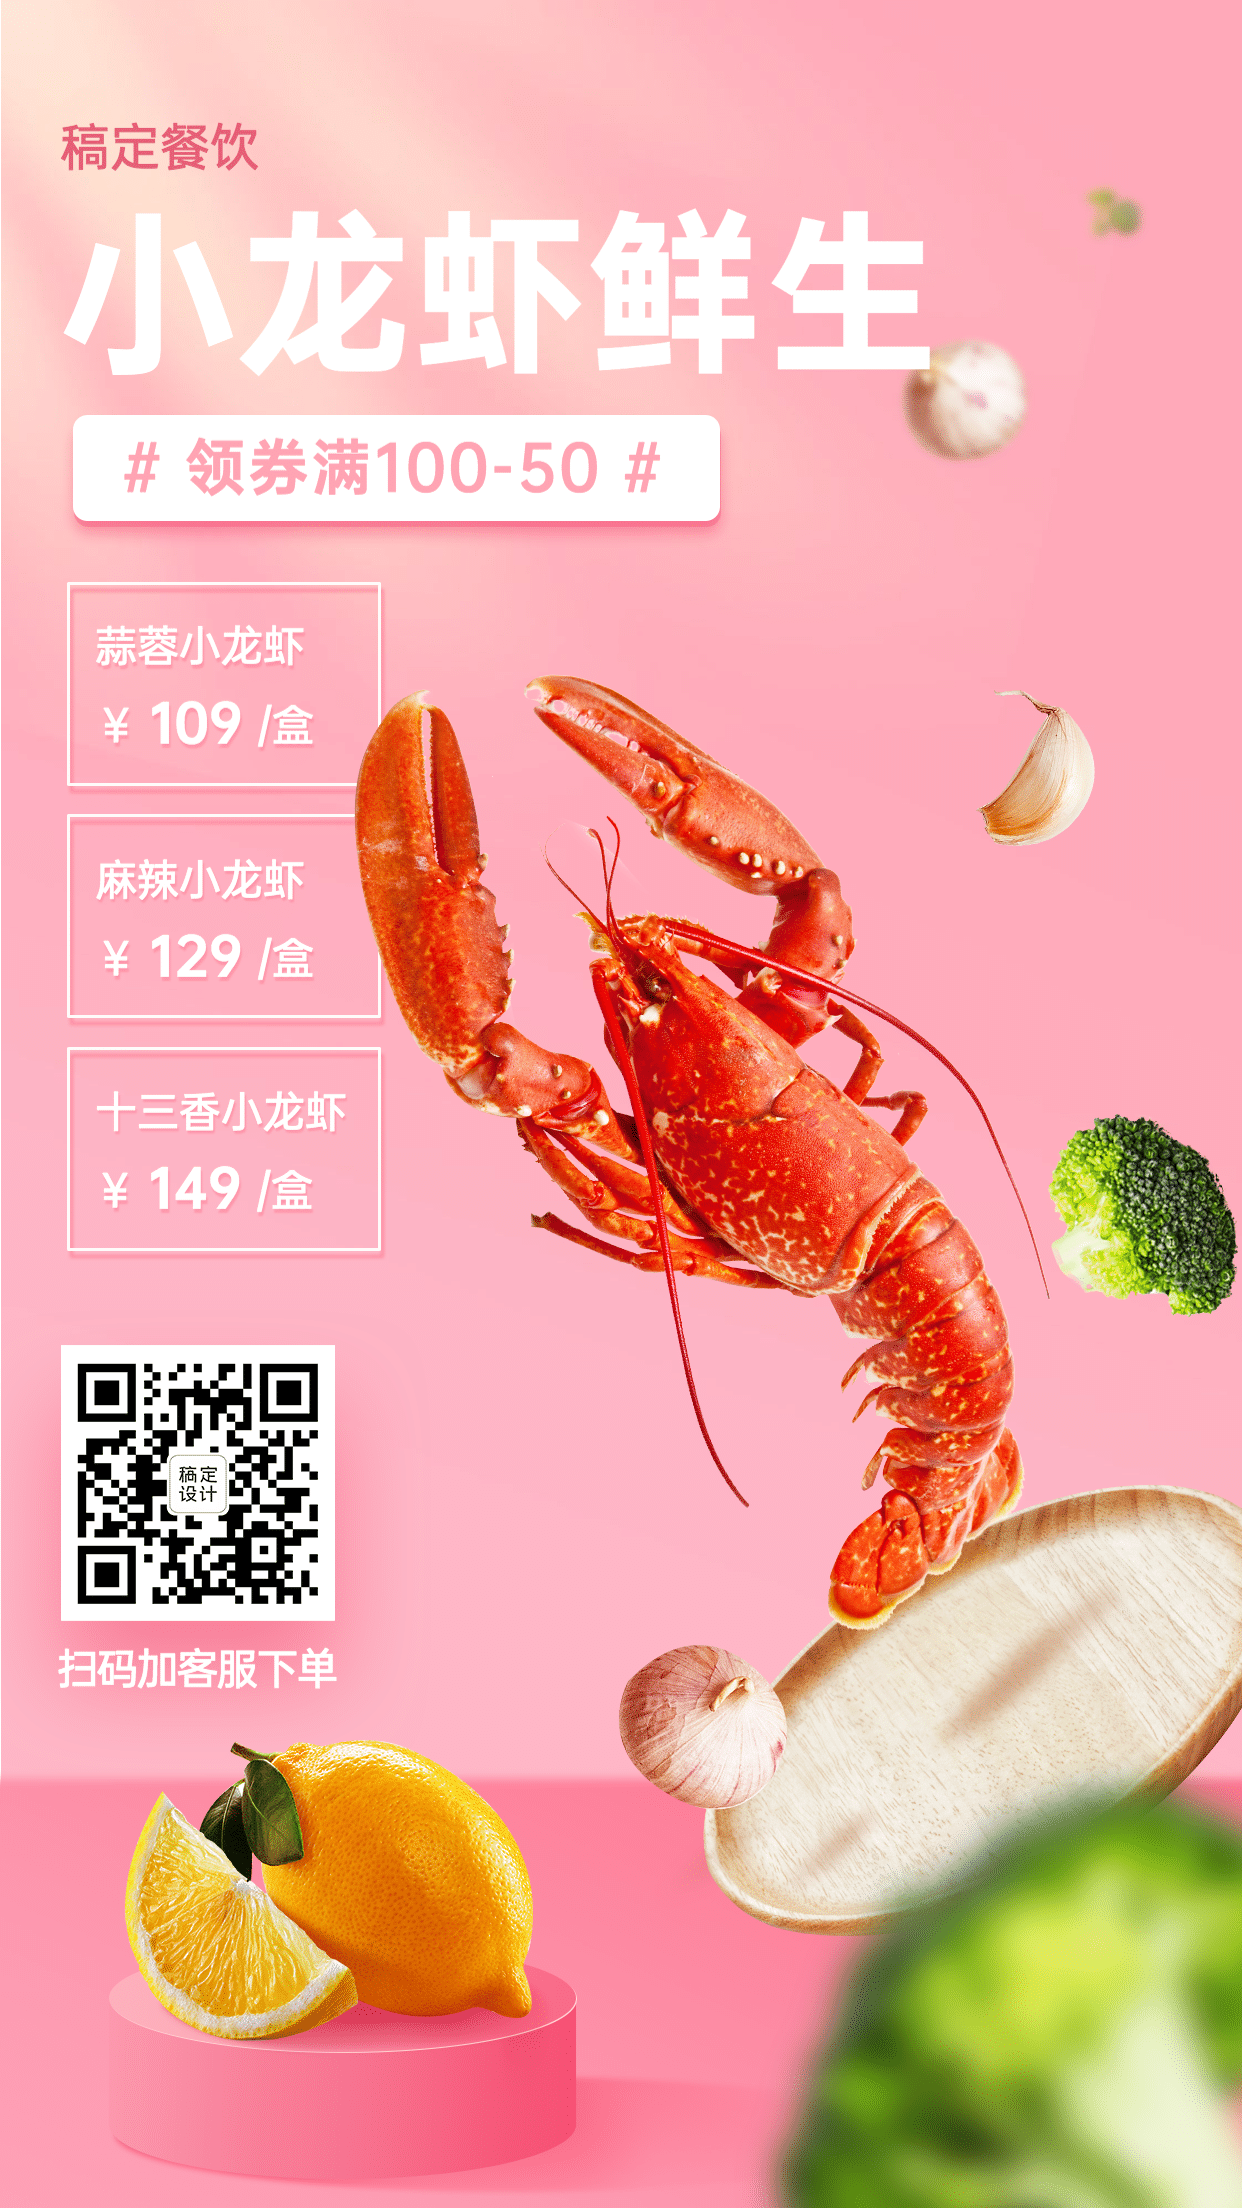 生鲜小龙虾促销海报预览效果